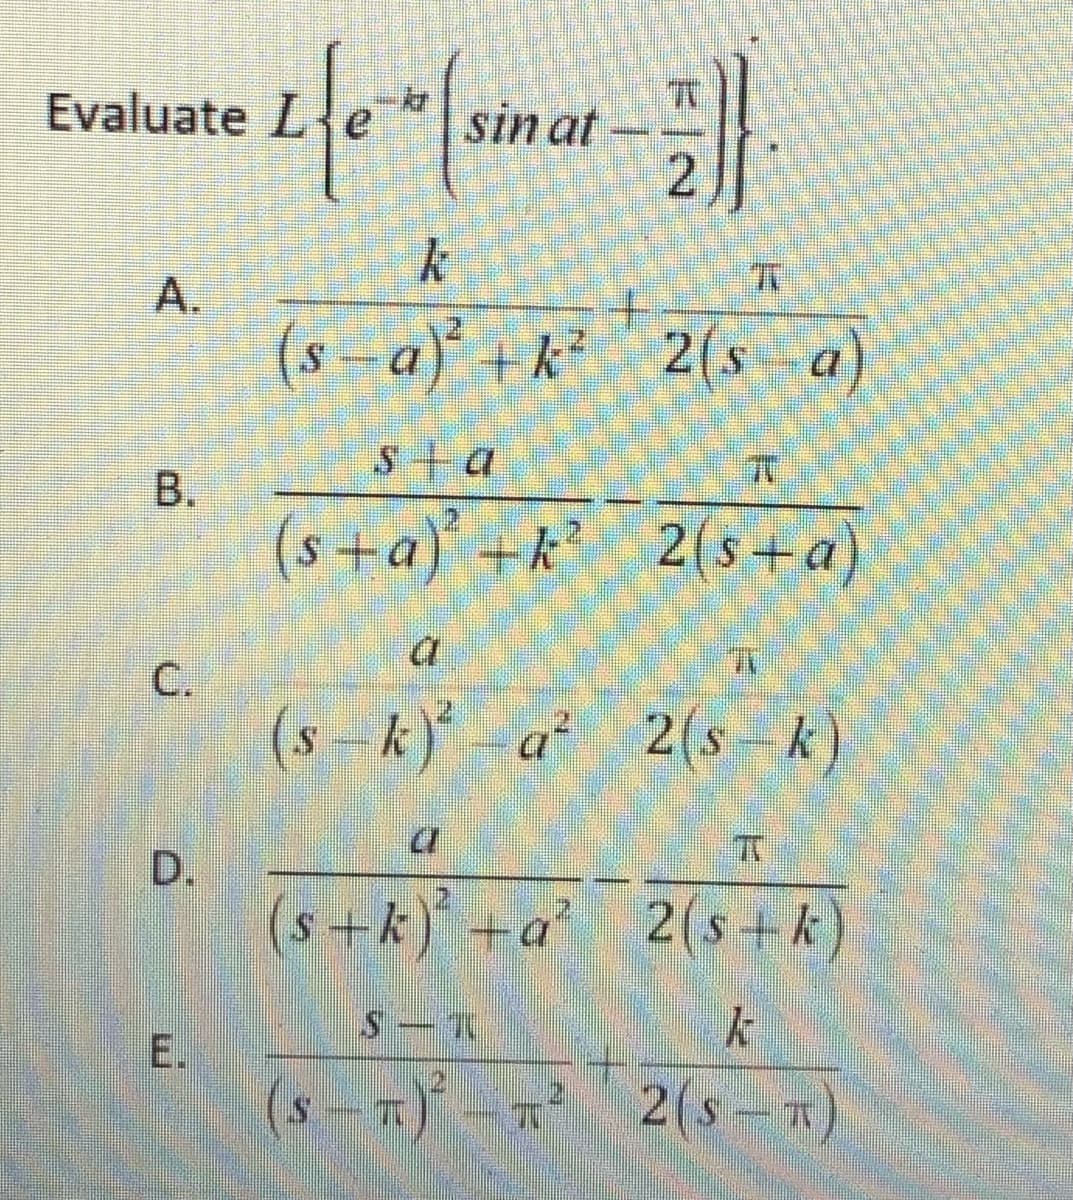 2(s - k)
sin at
2.
Evaluate
A.
(s -a) +k²
2(s a)
B.
(s+a)
+k 2(s +a)
C.
(s --k)* -a* 2(s-k)
D.
+k)+a 2(s+ k)
(s-)-
2(s-T)
E.
